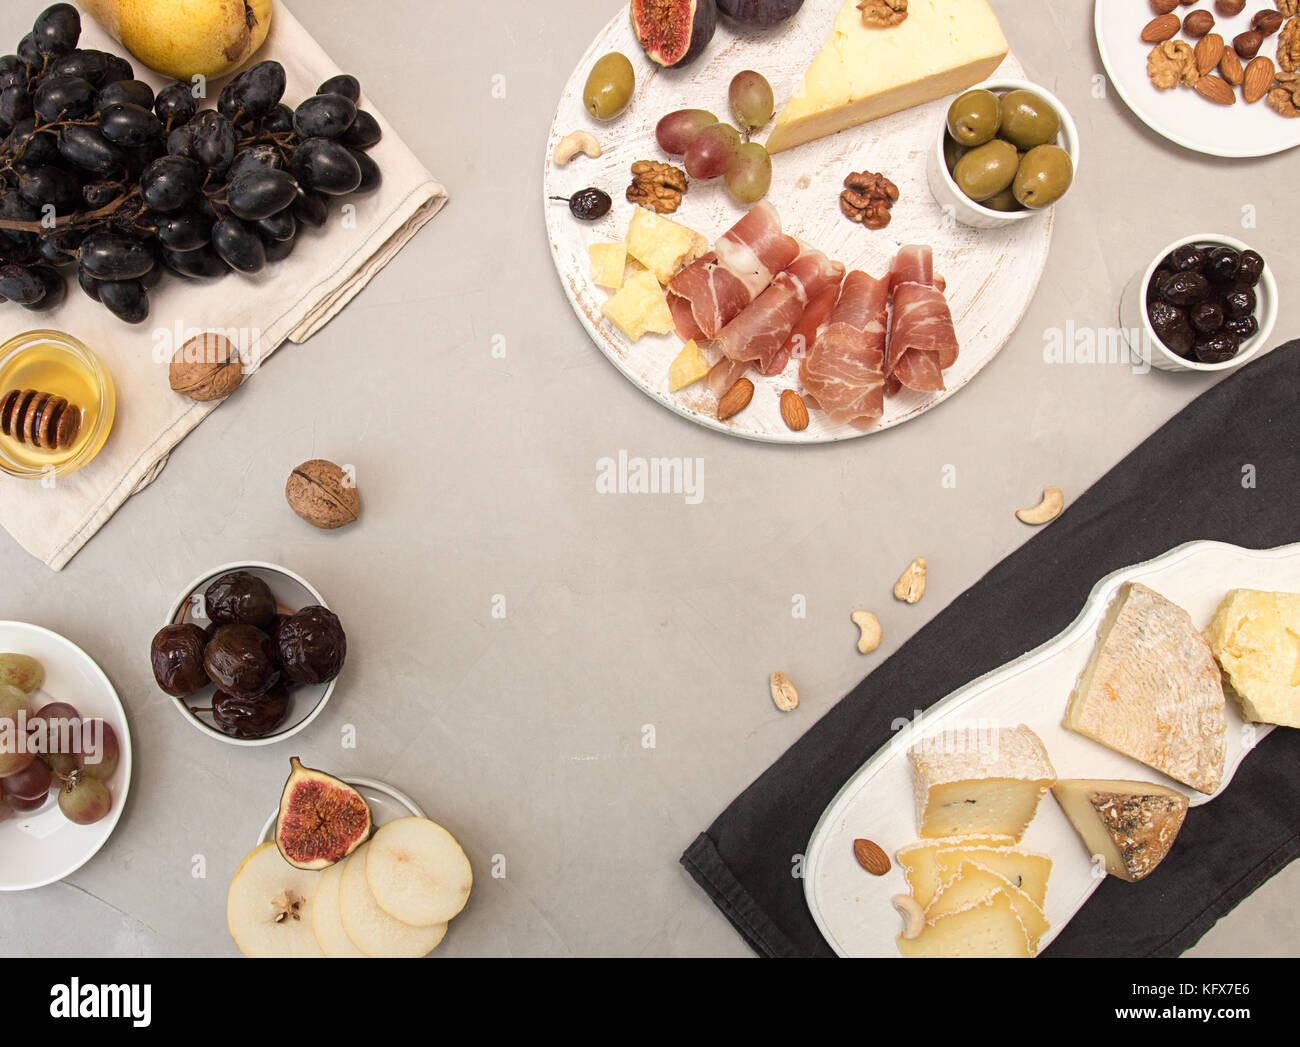 Die Zusammensetzung von Lebensmitteln Käseplatte mit Käse, Aufschnitt, verschiedene Früchte und Nüsse. Overhead von stücksatz verschimmelten Käse, Schinken, eingelegten Pflaumen, bunc Stockfoto